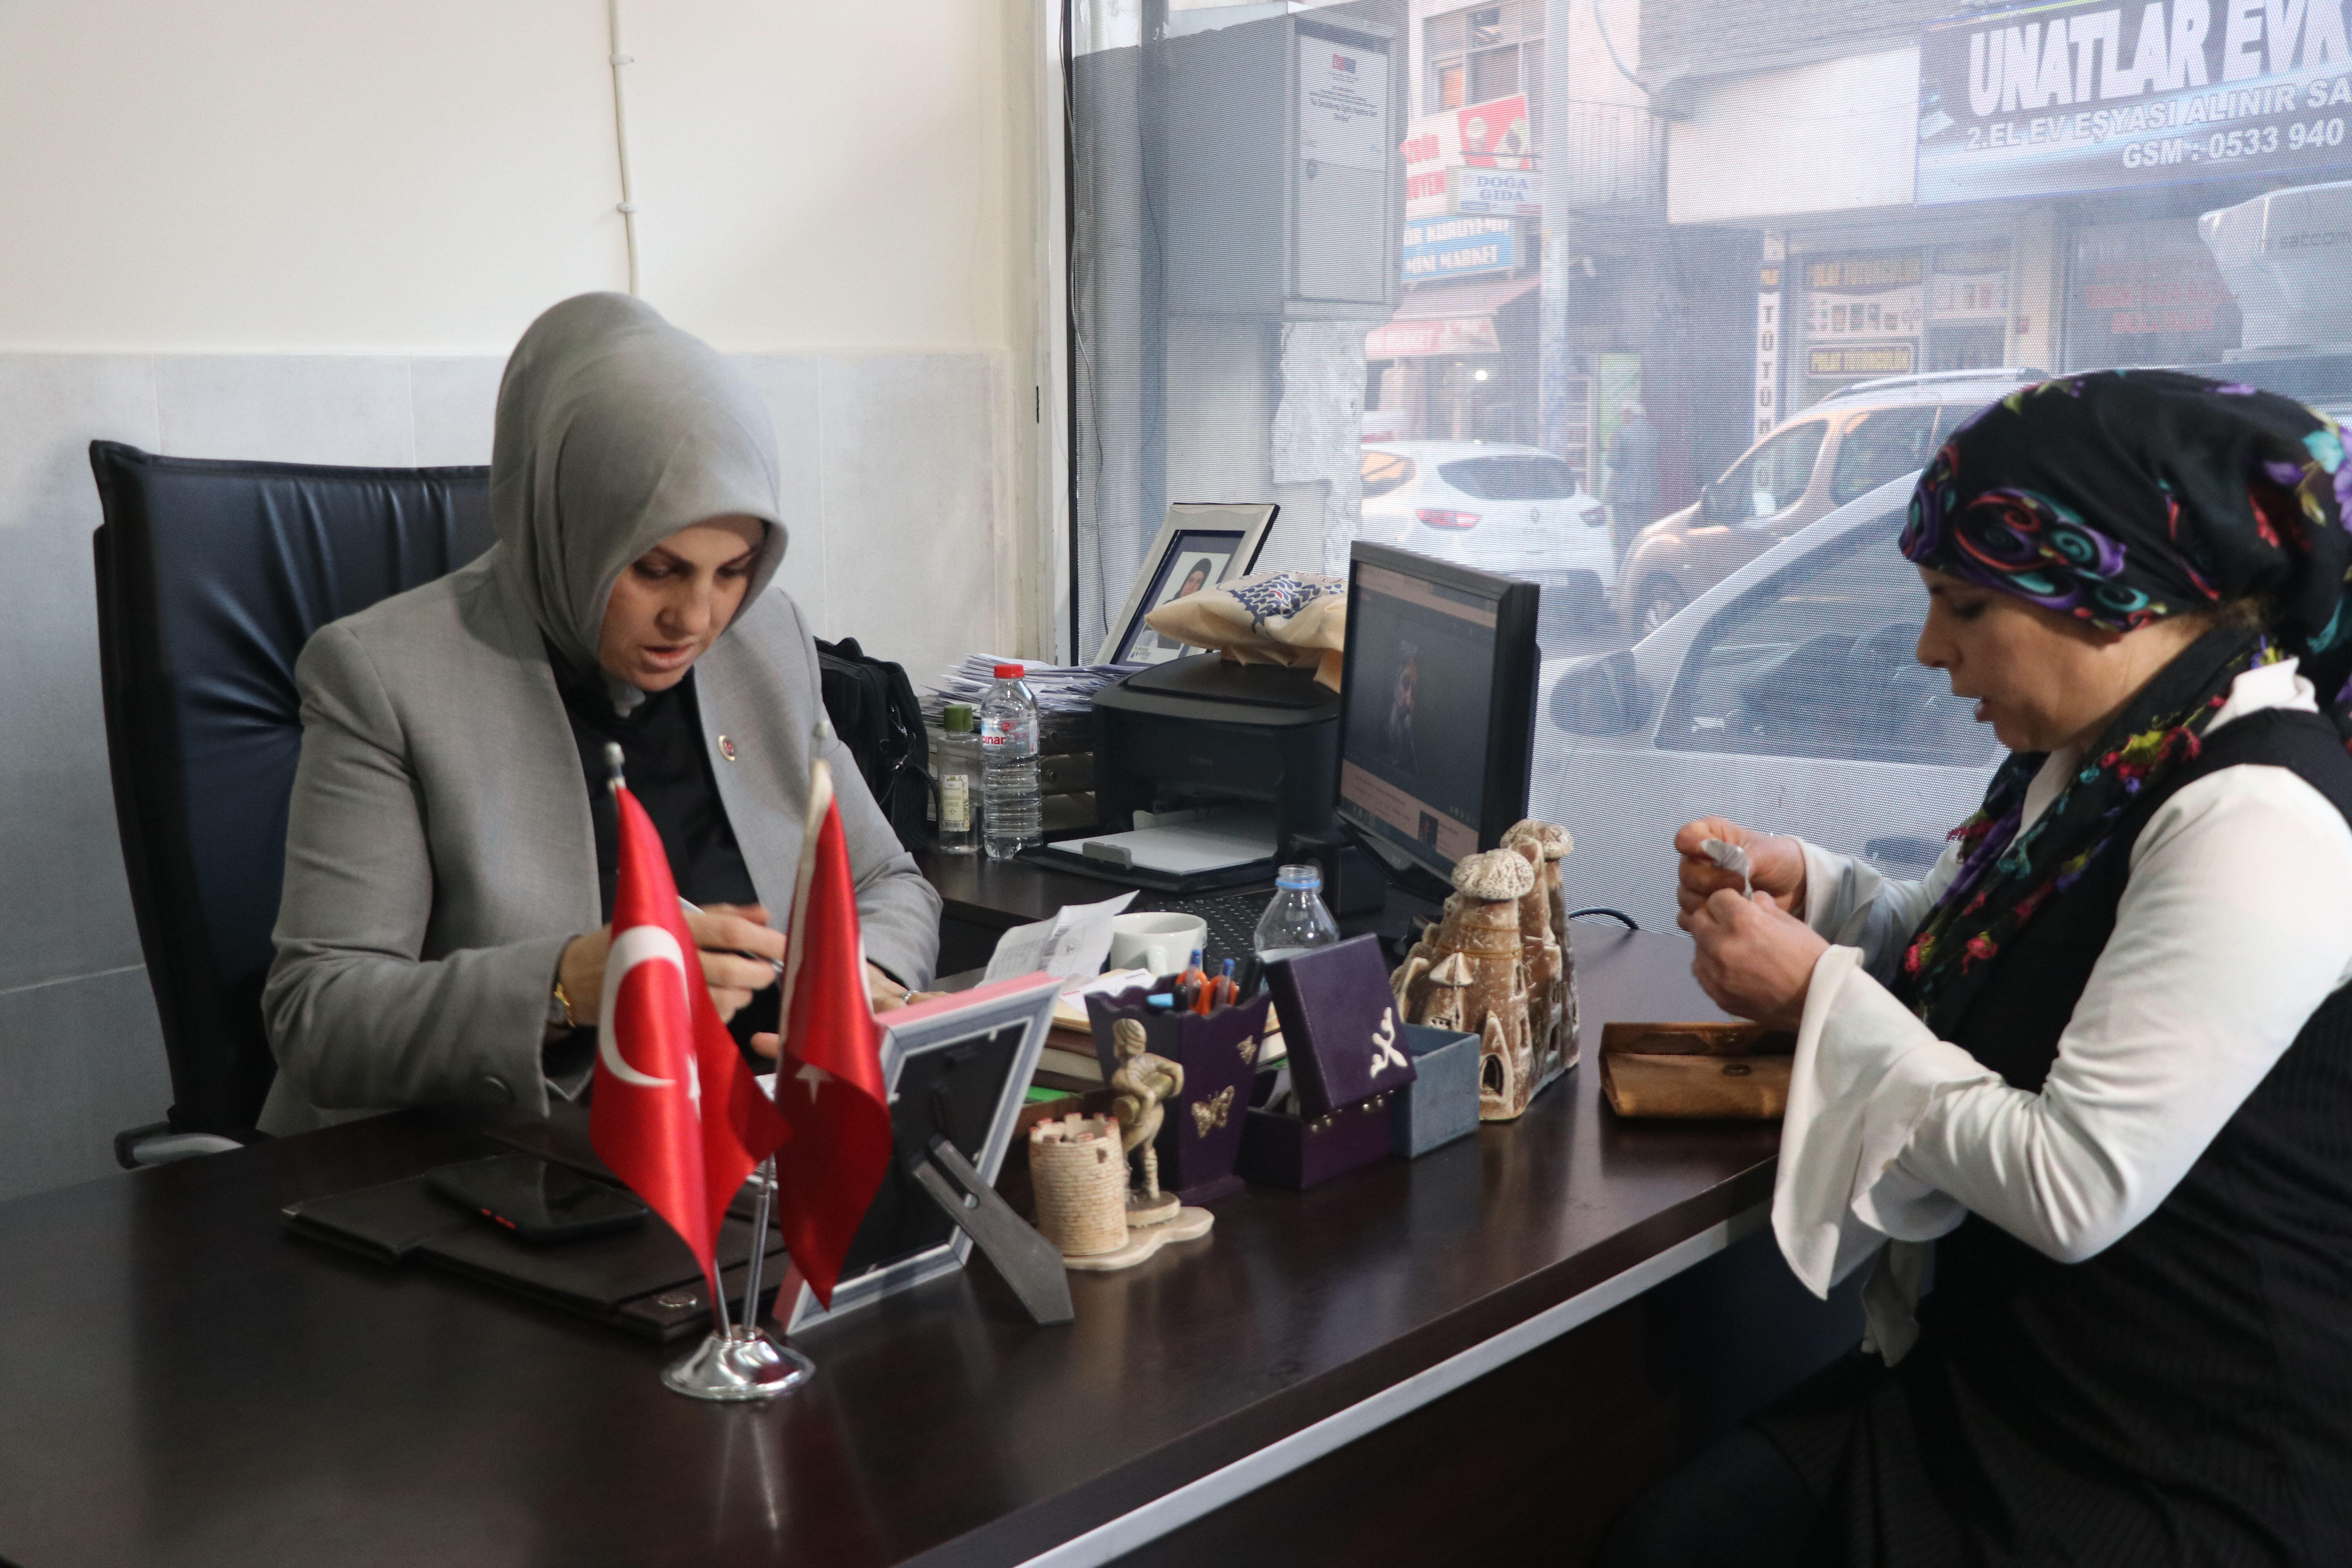 14 yaşındayken evlendirilen Diyarbakırın tek kadın muhtarı, 40 kız çocuğu gelin olmaktan kurtardı